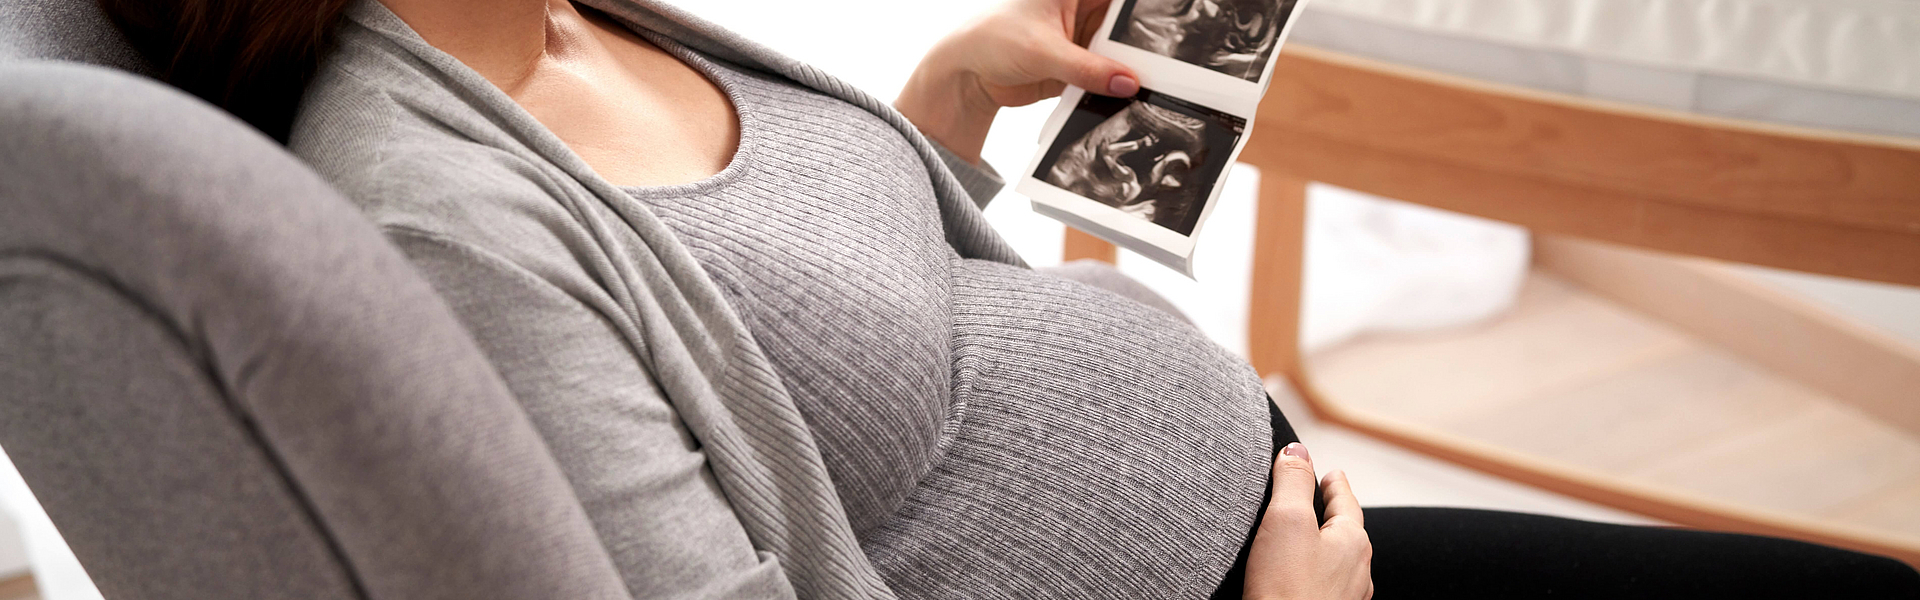 Schwangere Frau sitzt im Sessel und betrachtet ihr Ultraschall